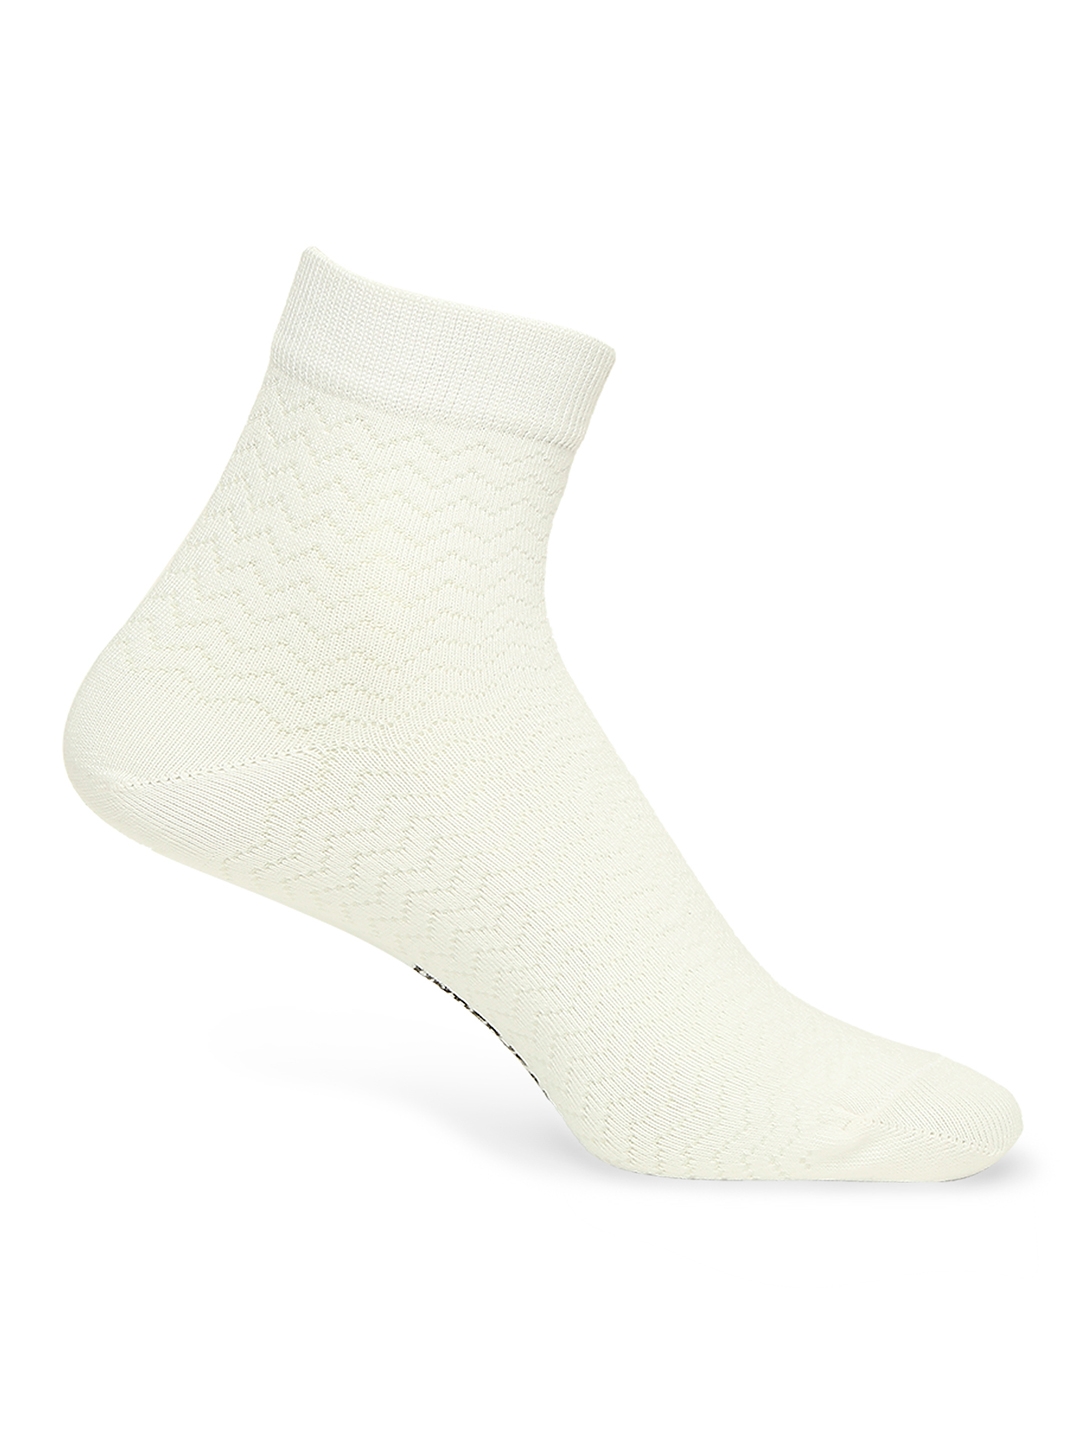 spykar | Underjeans by Spykar Premium White & Anthra Melange Ankle Length Socks - Pack Of 2 3